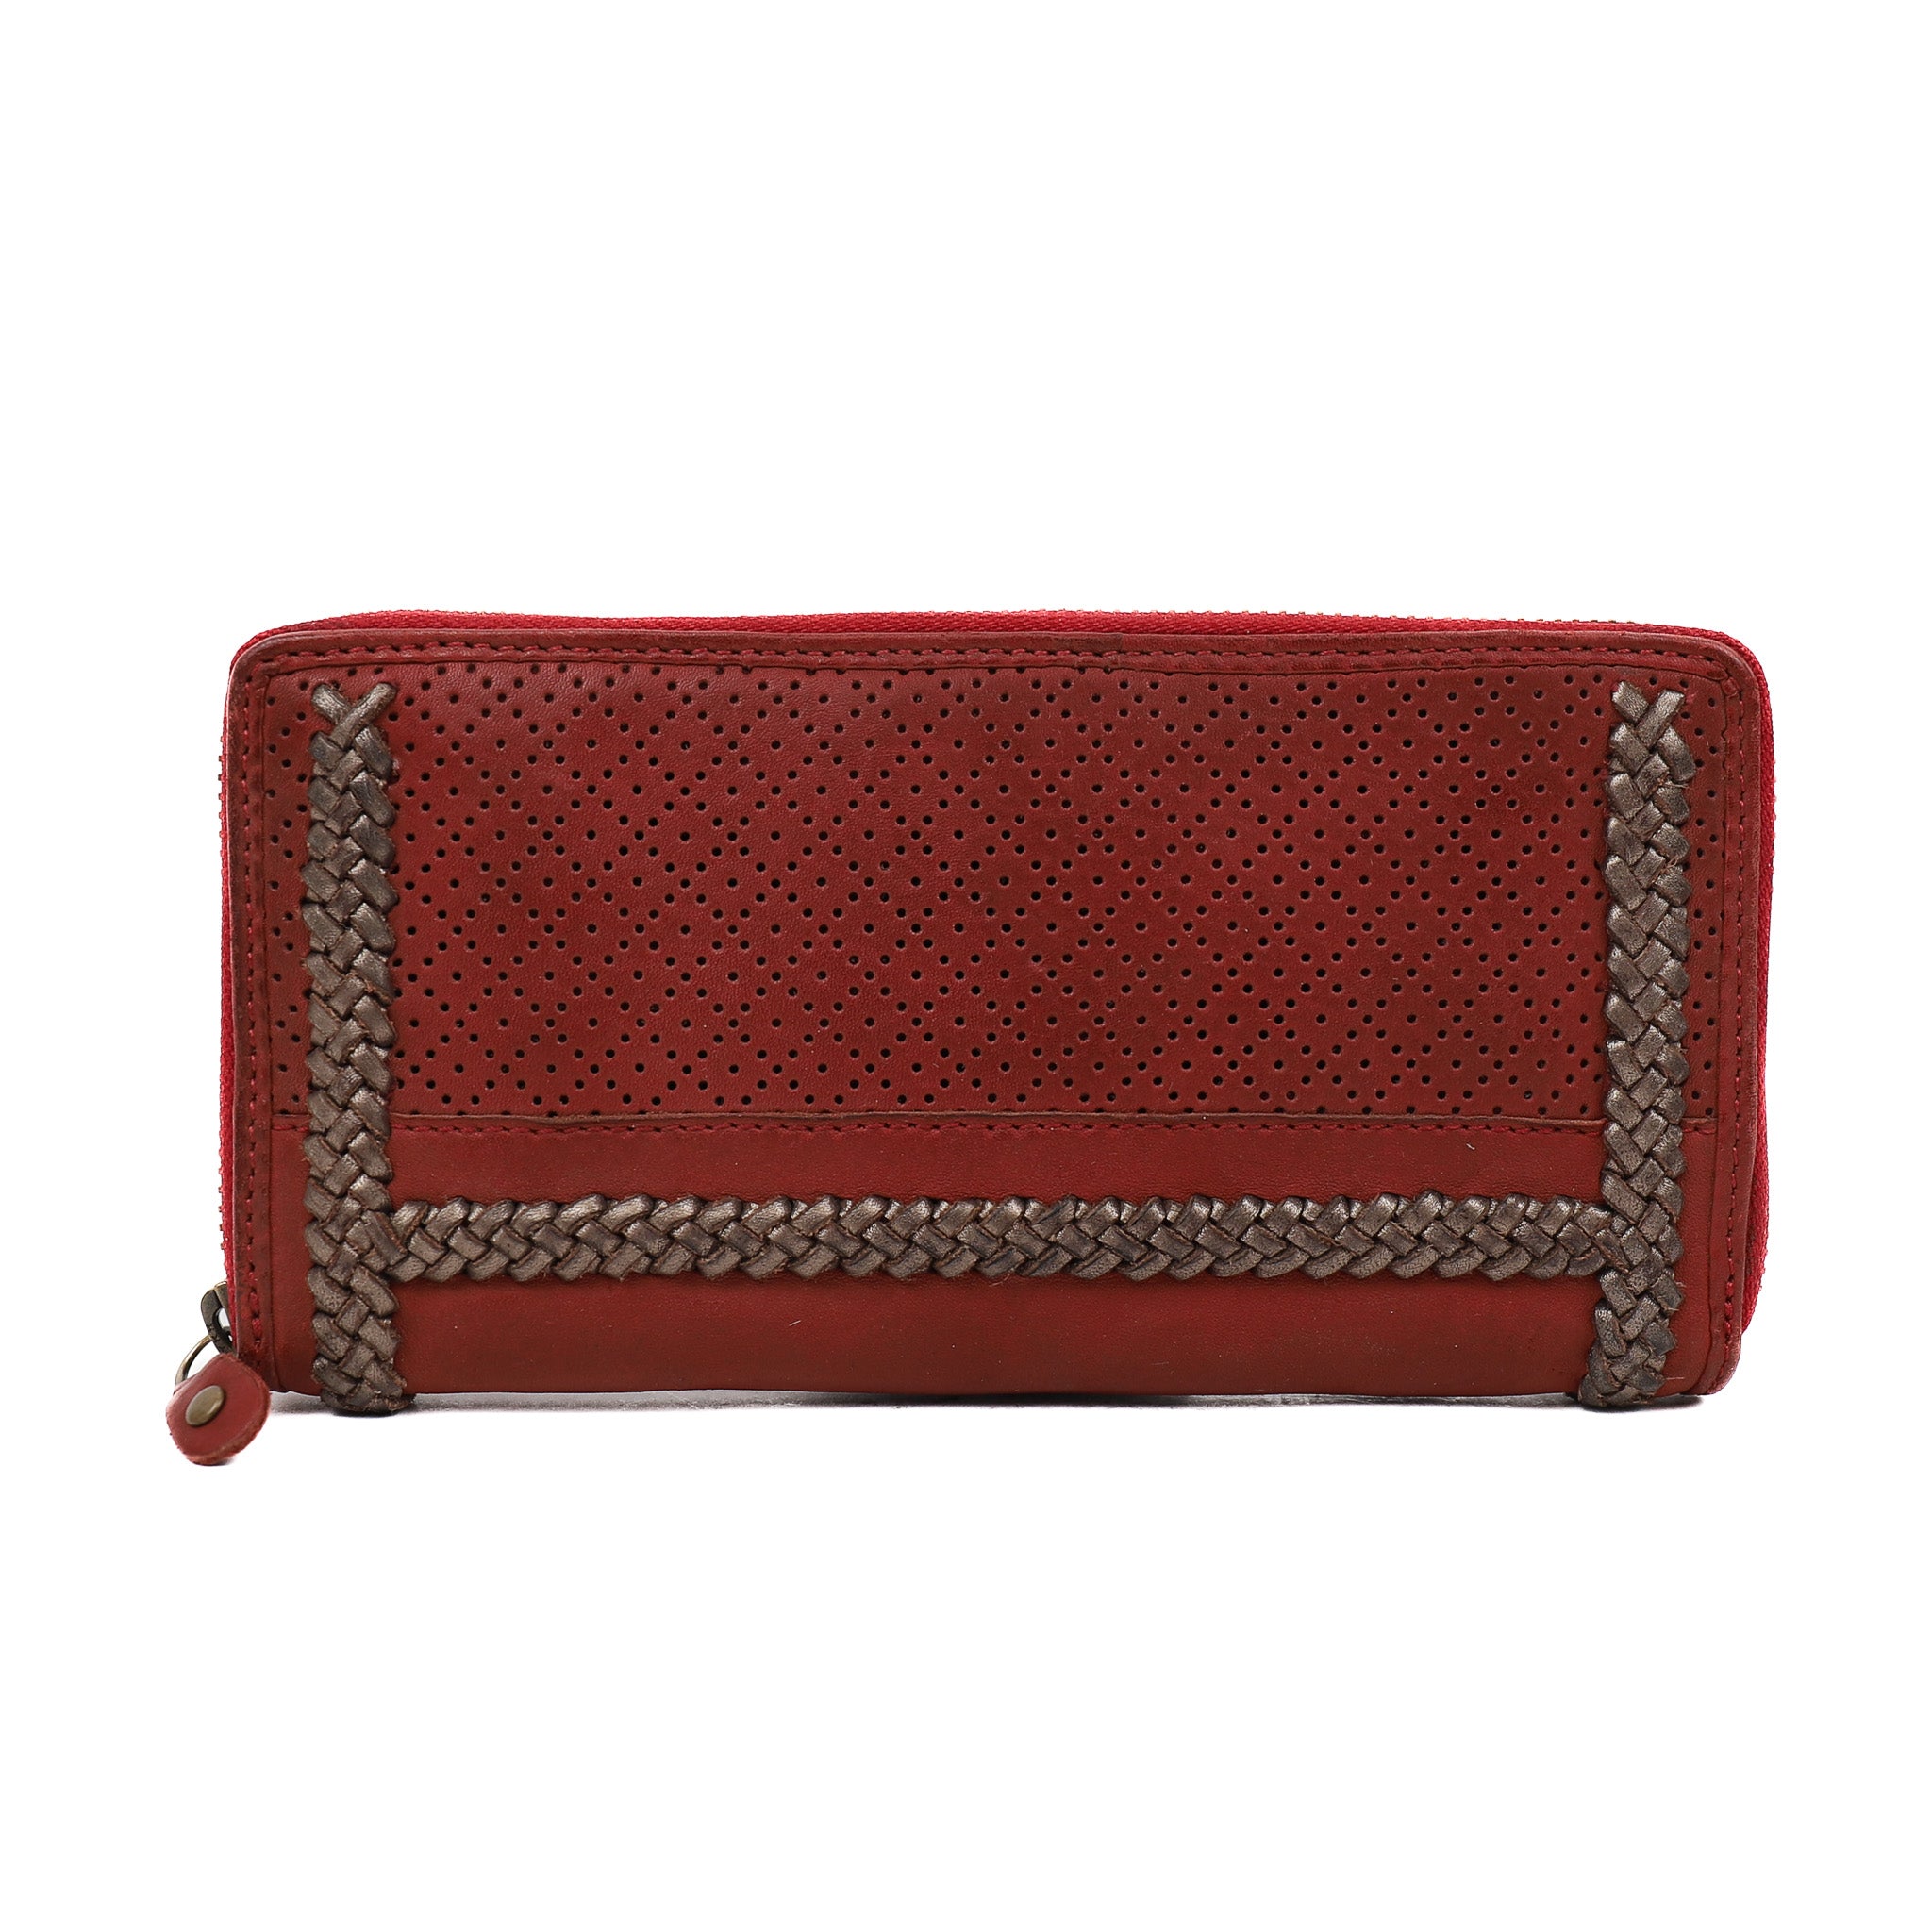 Zip wallet red - GR 11415